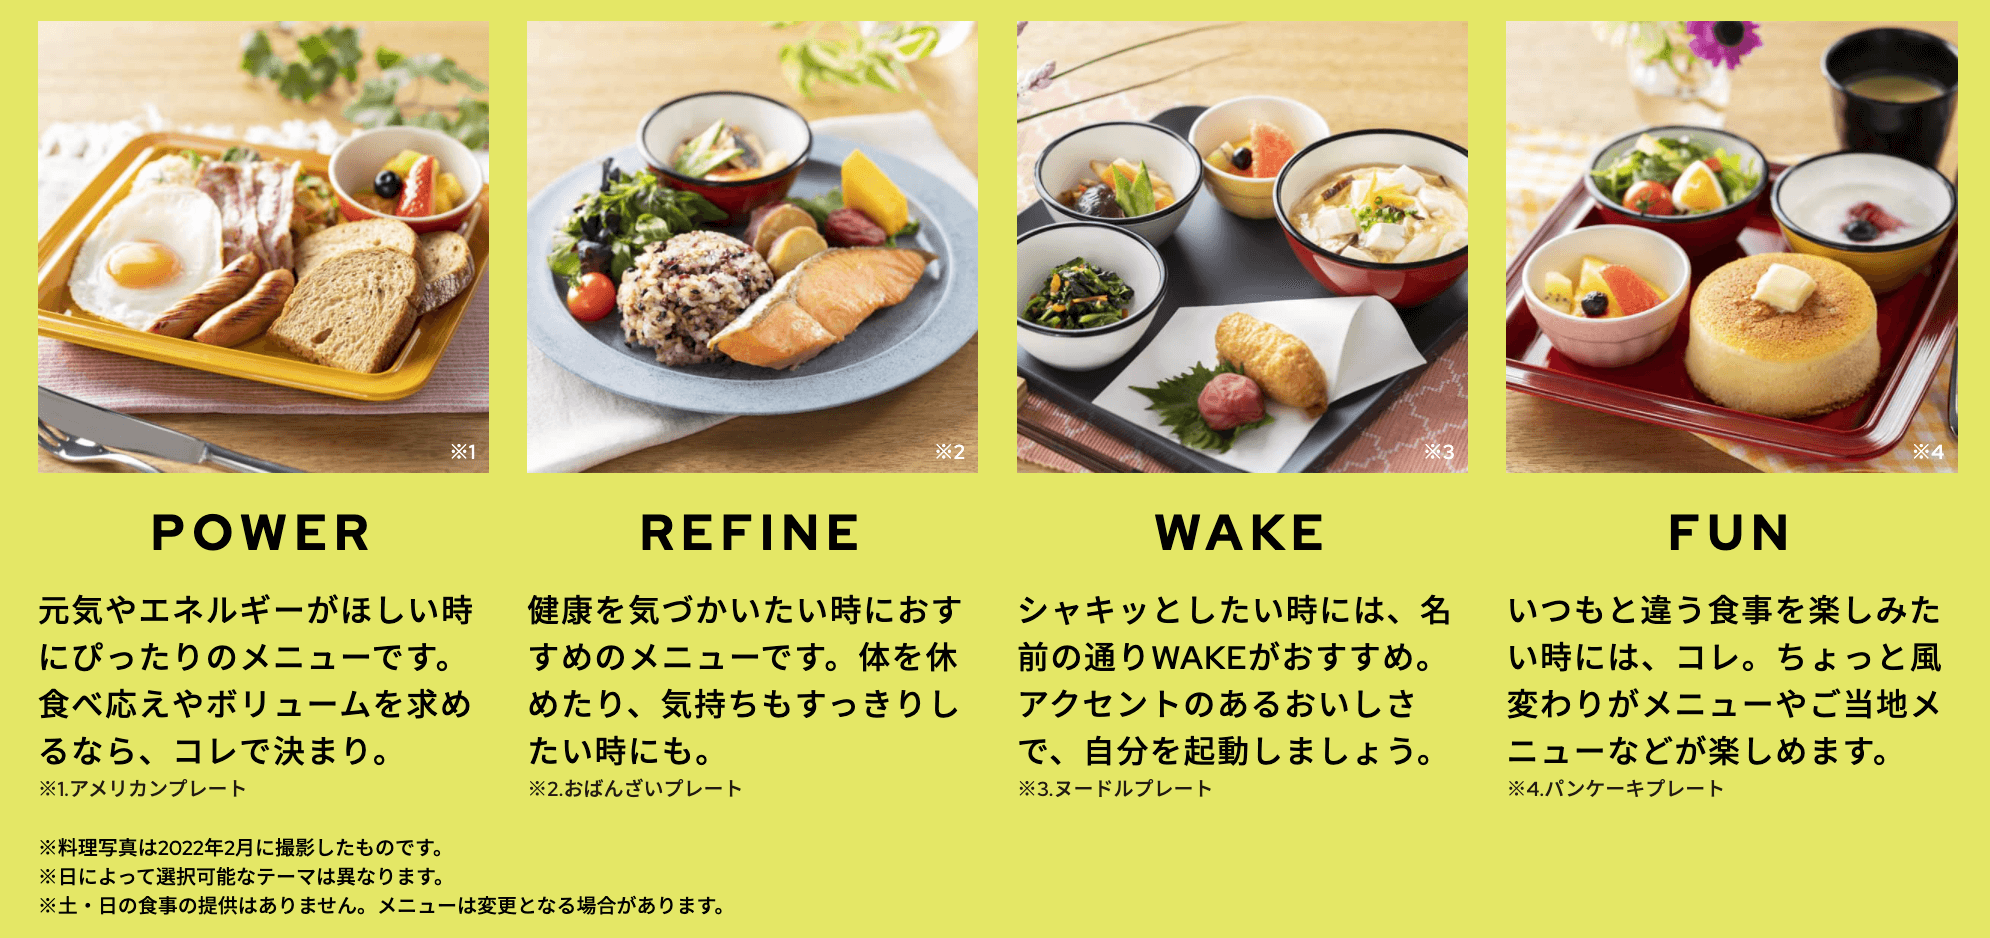 朝食のメニューは、その日の気分に合わせて4種類から選べます。価格も200円〜とリーズナブルで嬉しい。